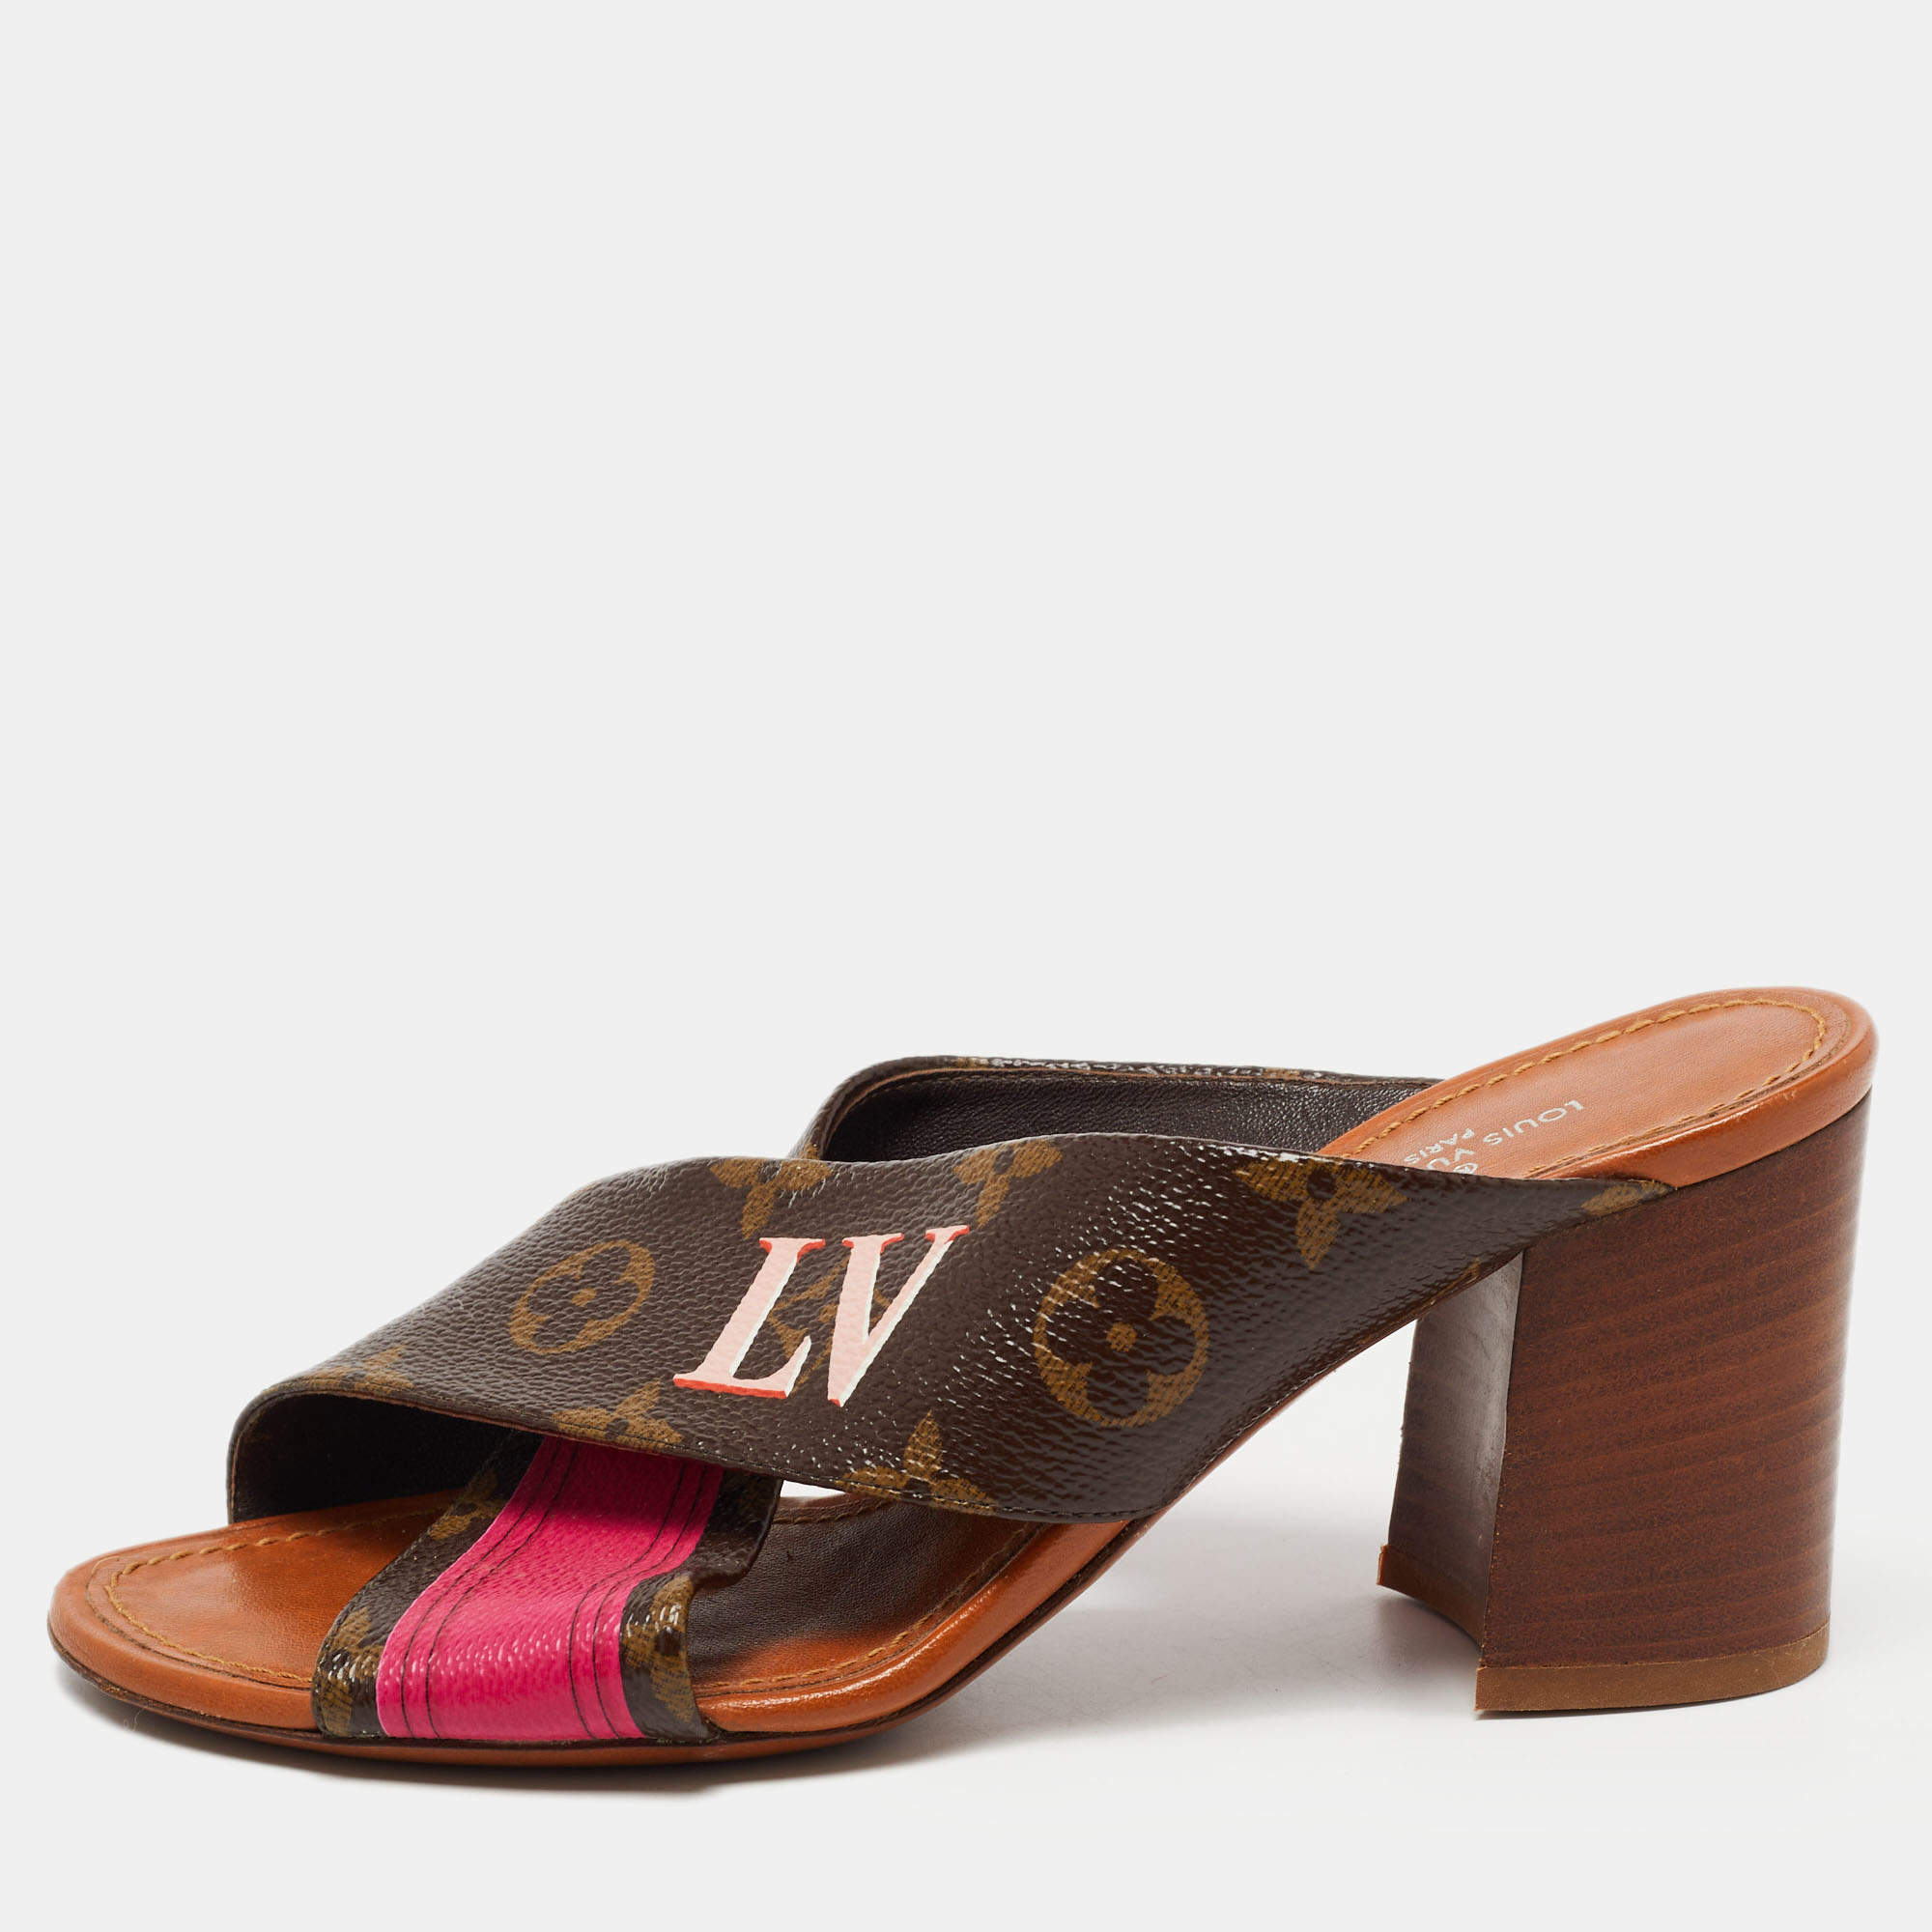 Authentic Louis Vuitton Sz 35 Denim LV Monogram/Leather Flip Flop Sandals